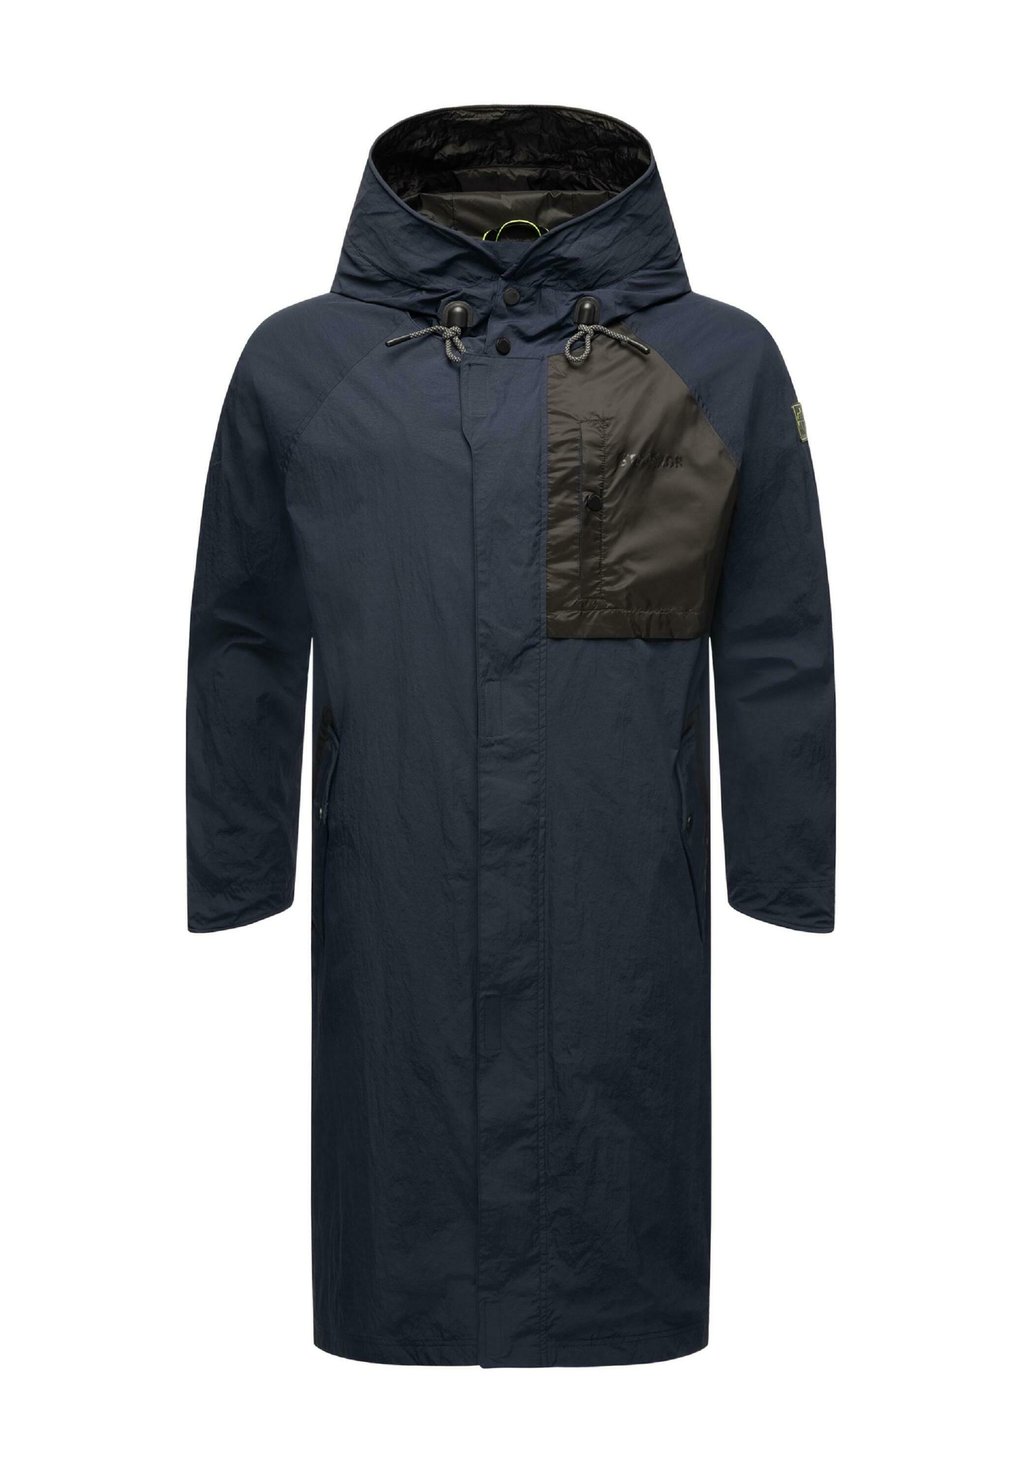 Куртка дождевик/водоотталкивающая куртка ZAFAAR STONE HARBOUR, цвет dark blue